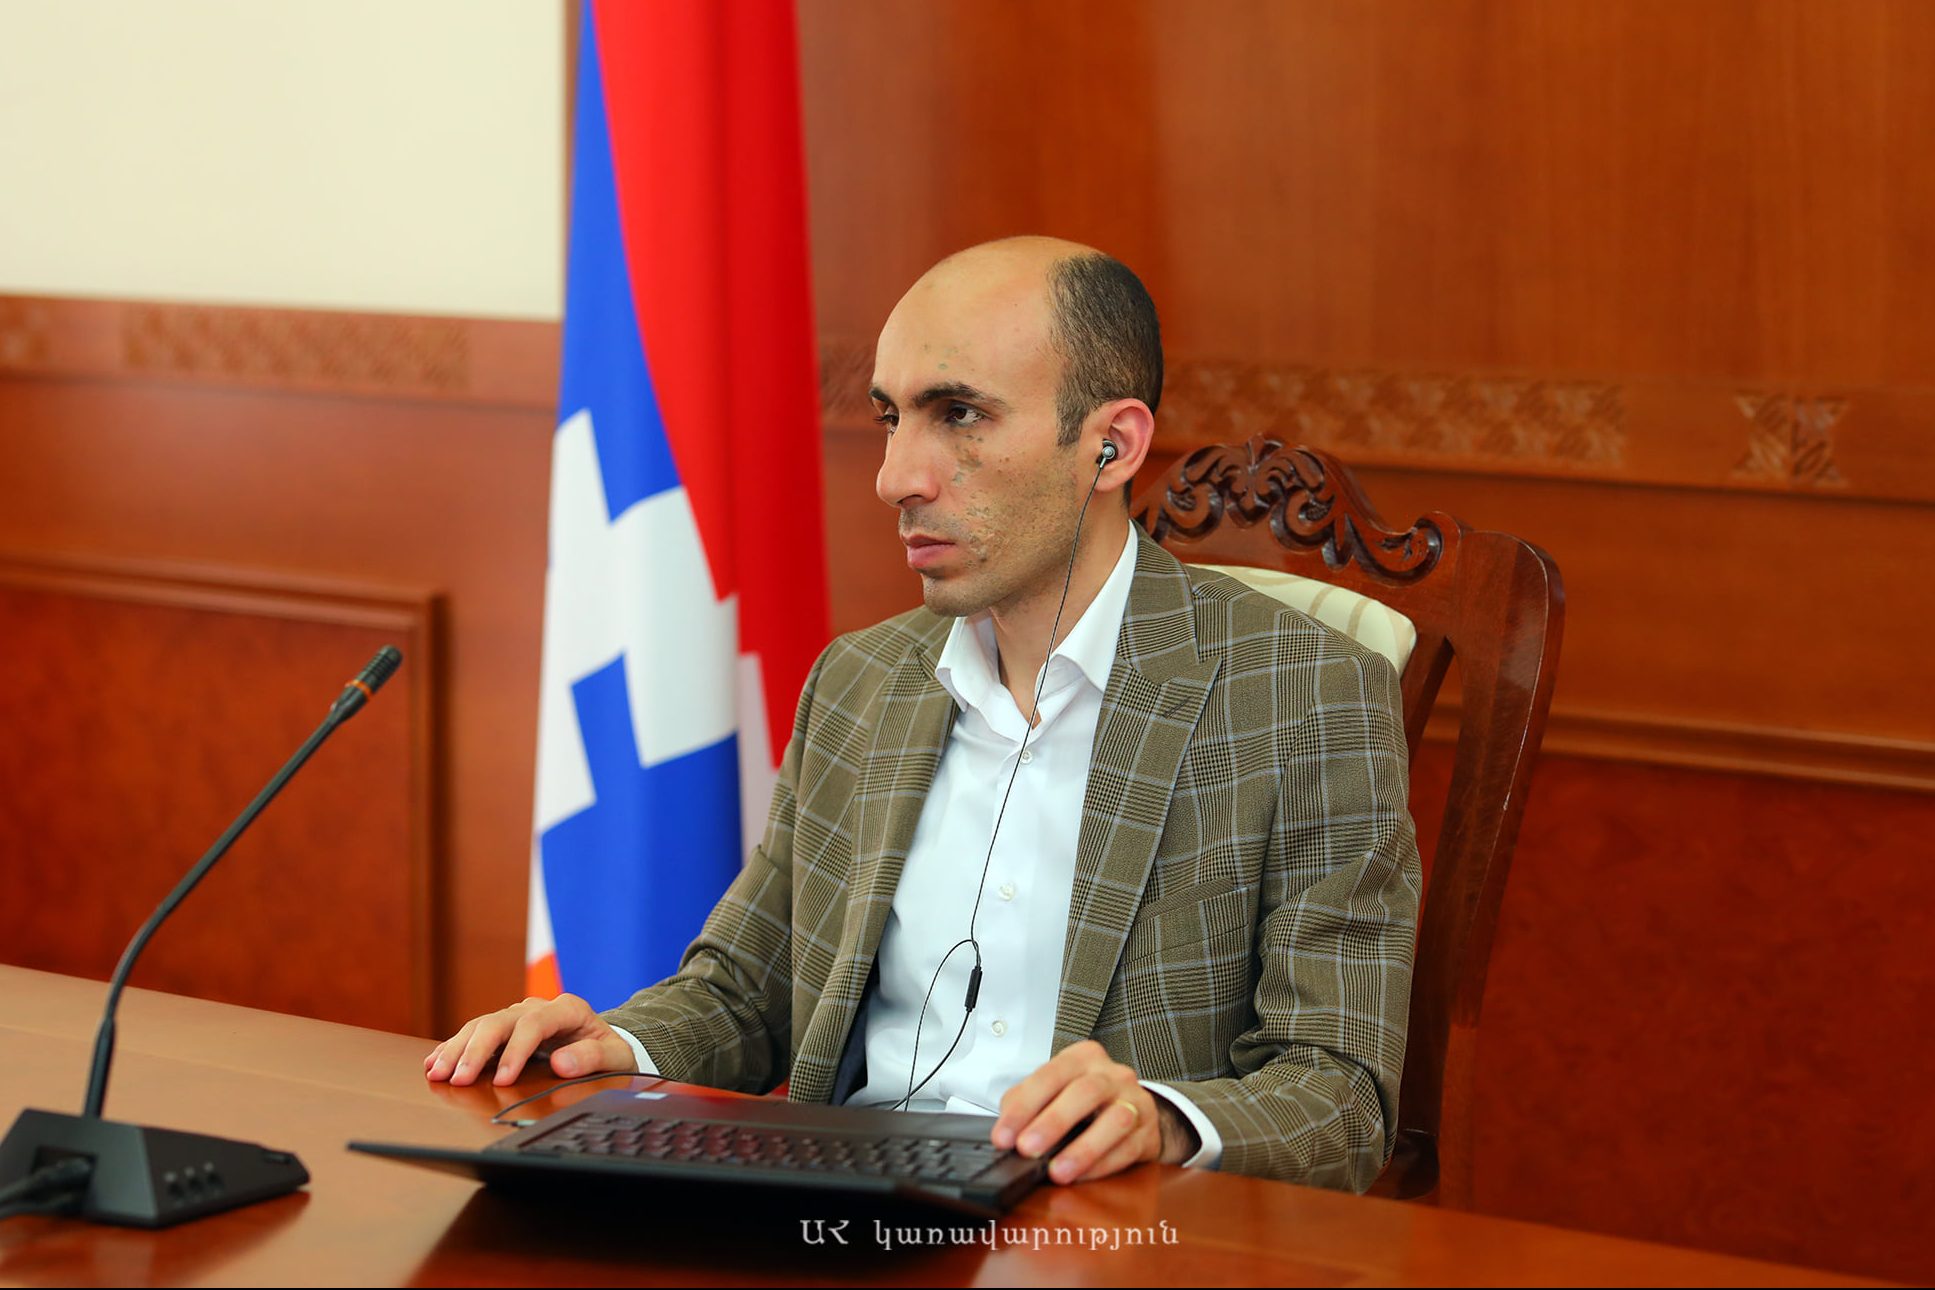 Бегларян строго осудил факт участия представителей ООН в мероприятии по случаю 30-летя членства Азербайджана в ООН, которое прошло в оккупированном Шуши